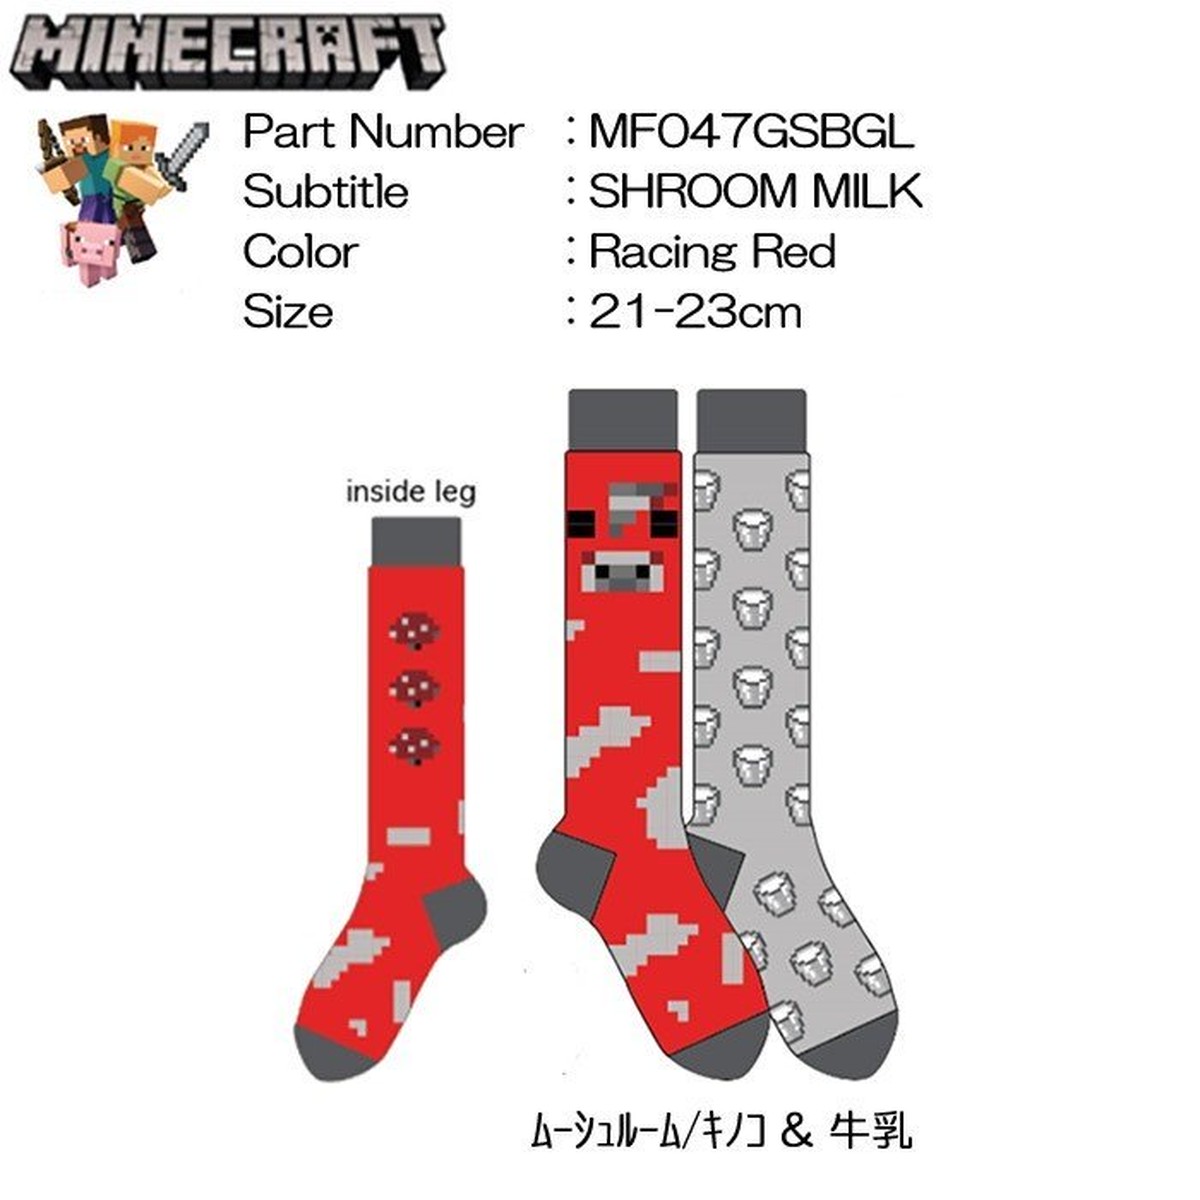 靴下マインクラフトソックス Knee Highs ムーシュルーム キノコ 牛乳 2 Pack 1set 047 Minecraft